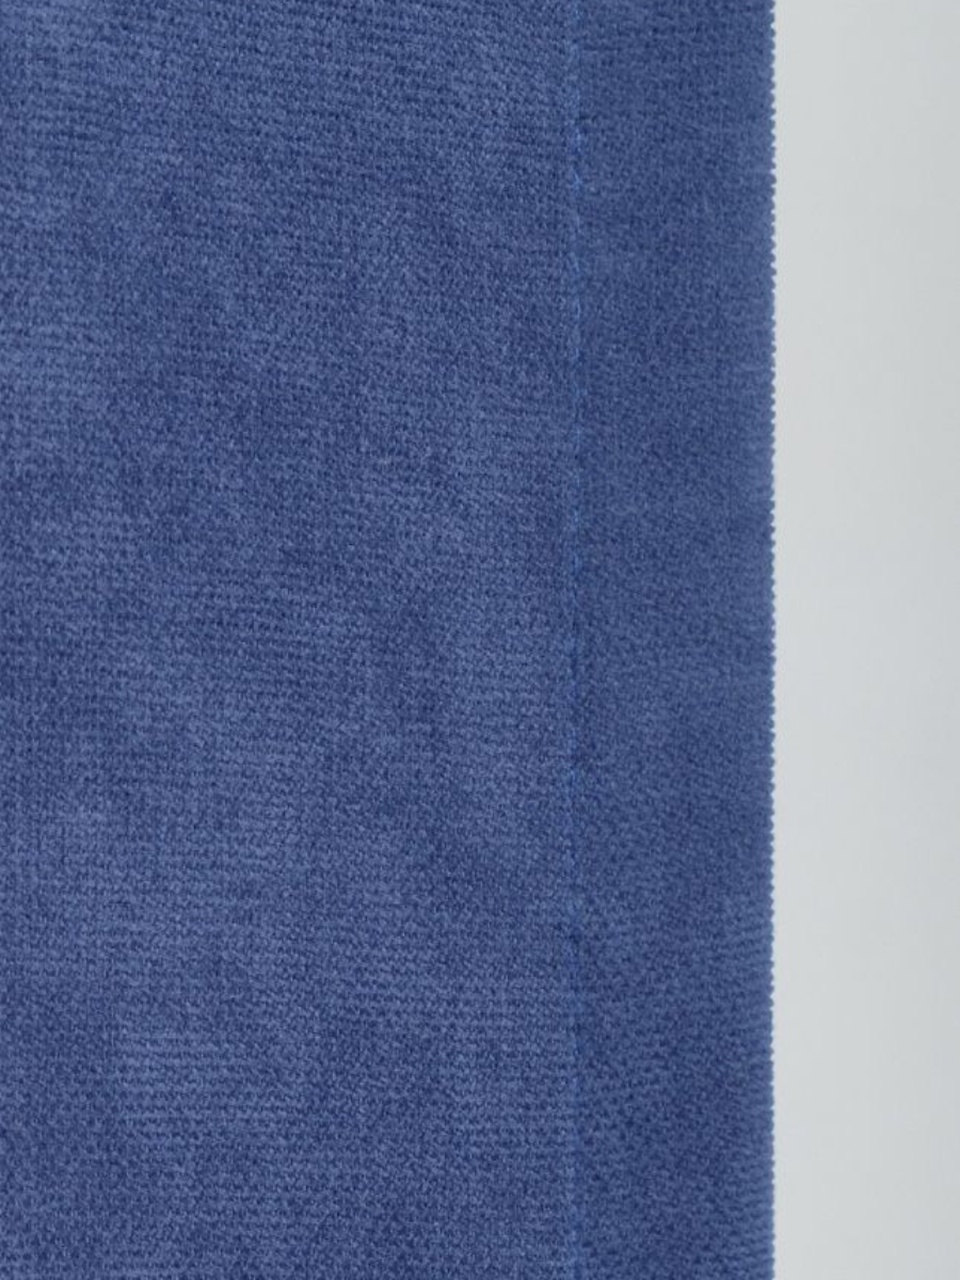 Портьеры Канвас светло-синий - 600 ₽, заказать онлайн.